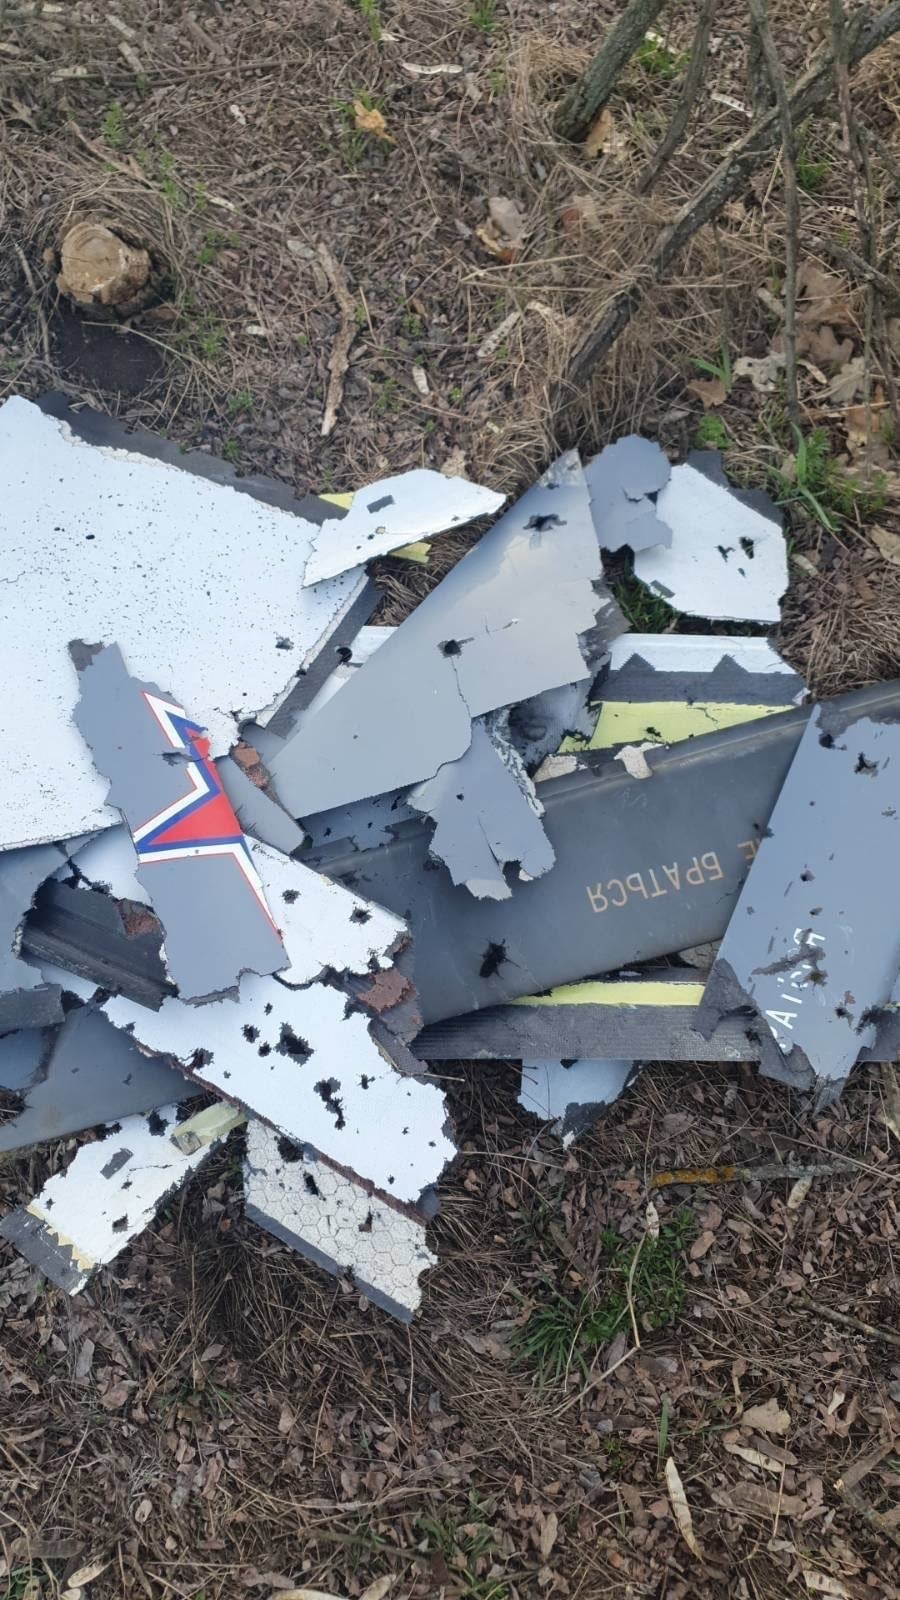 乌克兰击落俄军新型“猎户座”无人机 残骸照片曝光